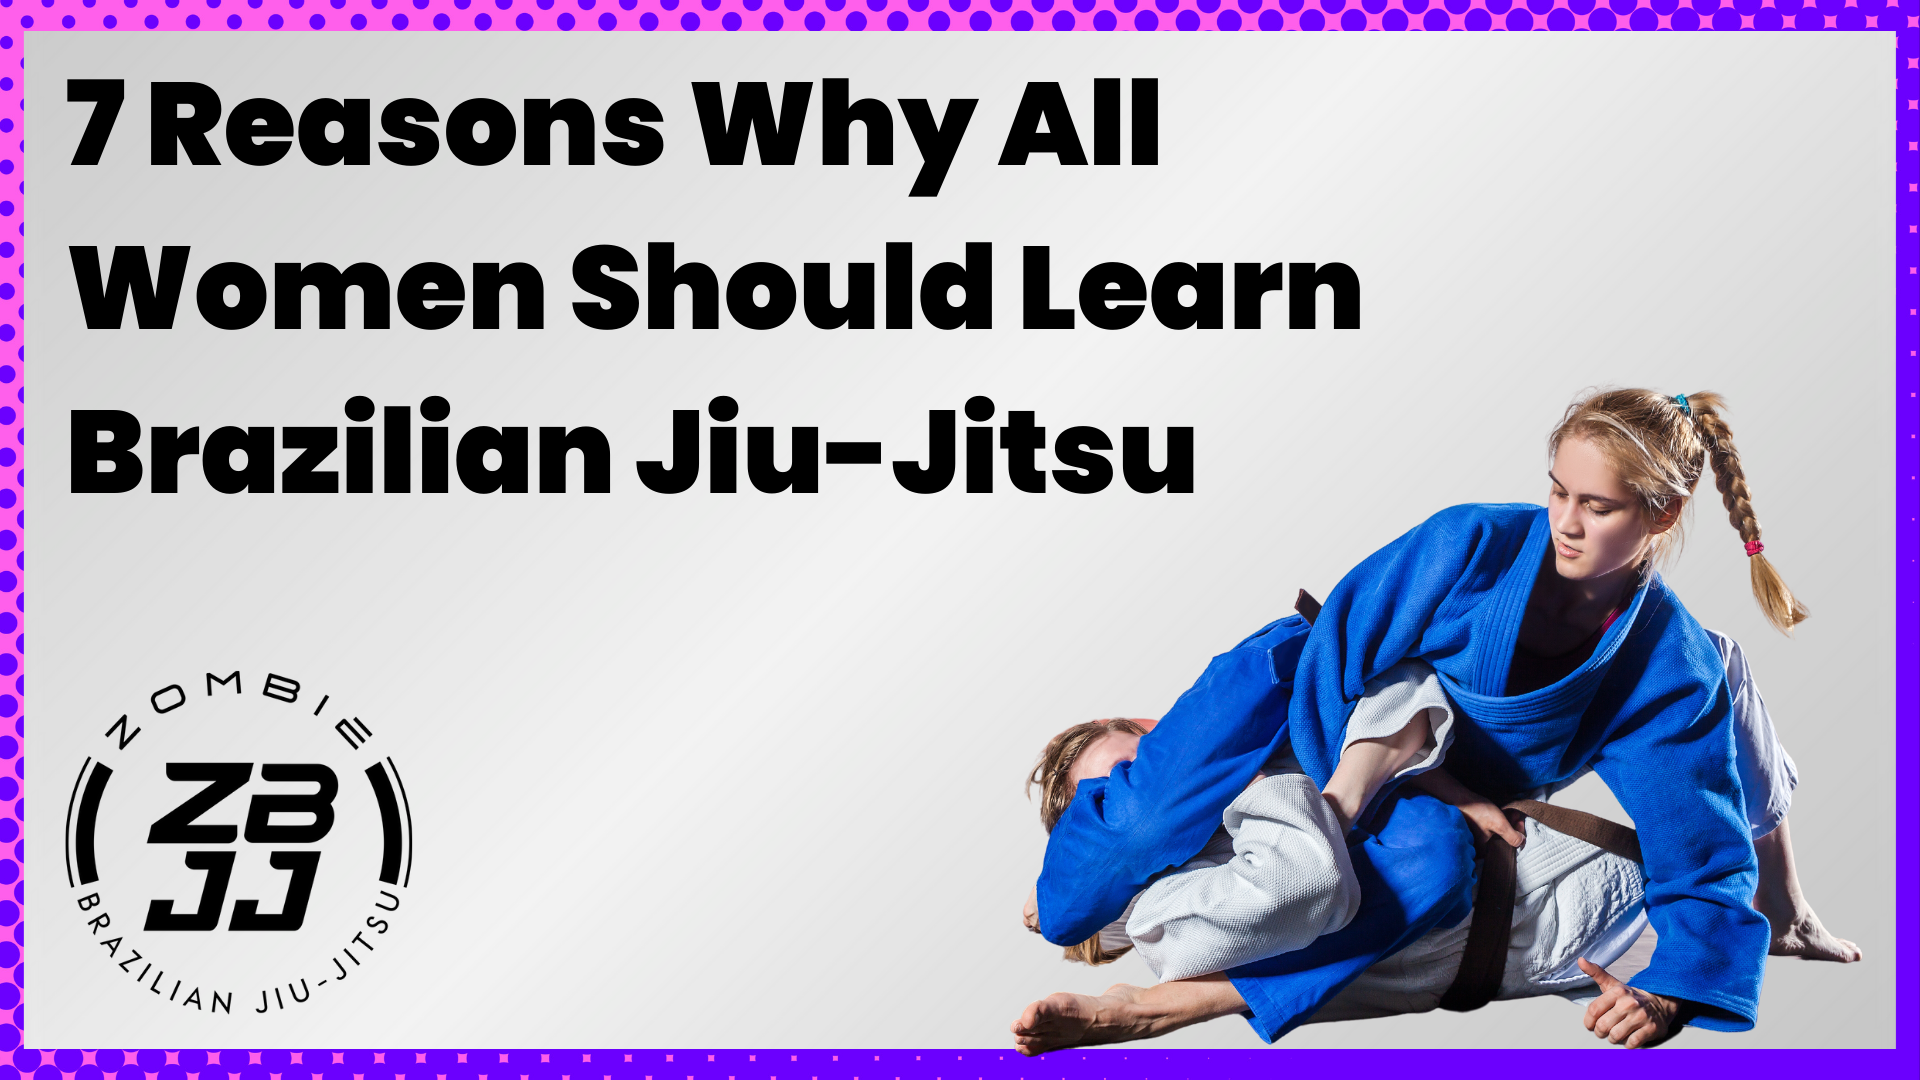 7 Reasons Why All Women Should Learn Brazilian Jiu-Jitsu